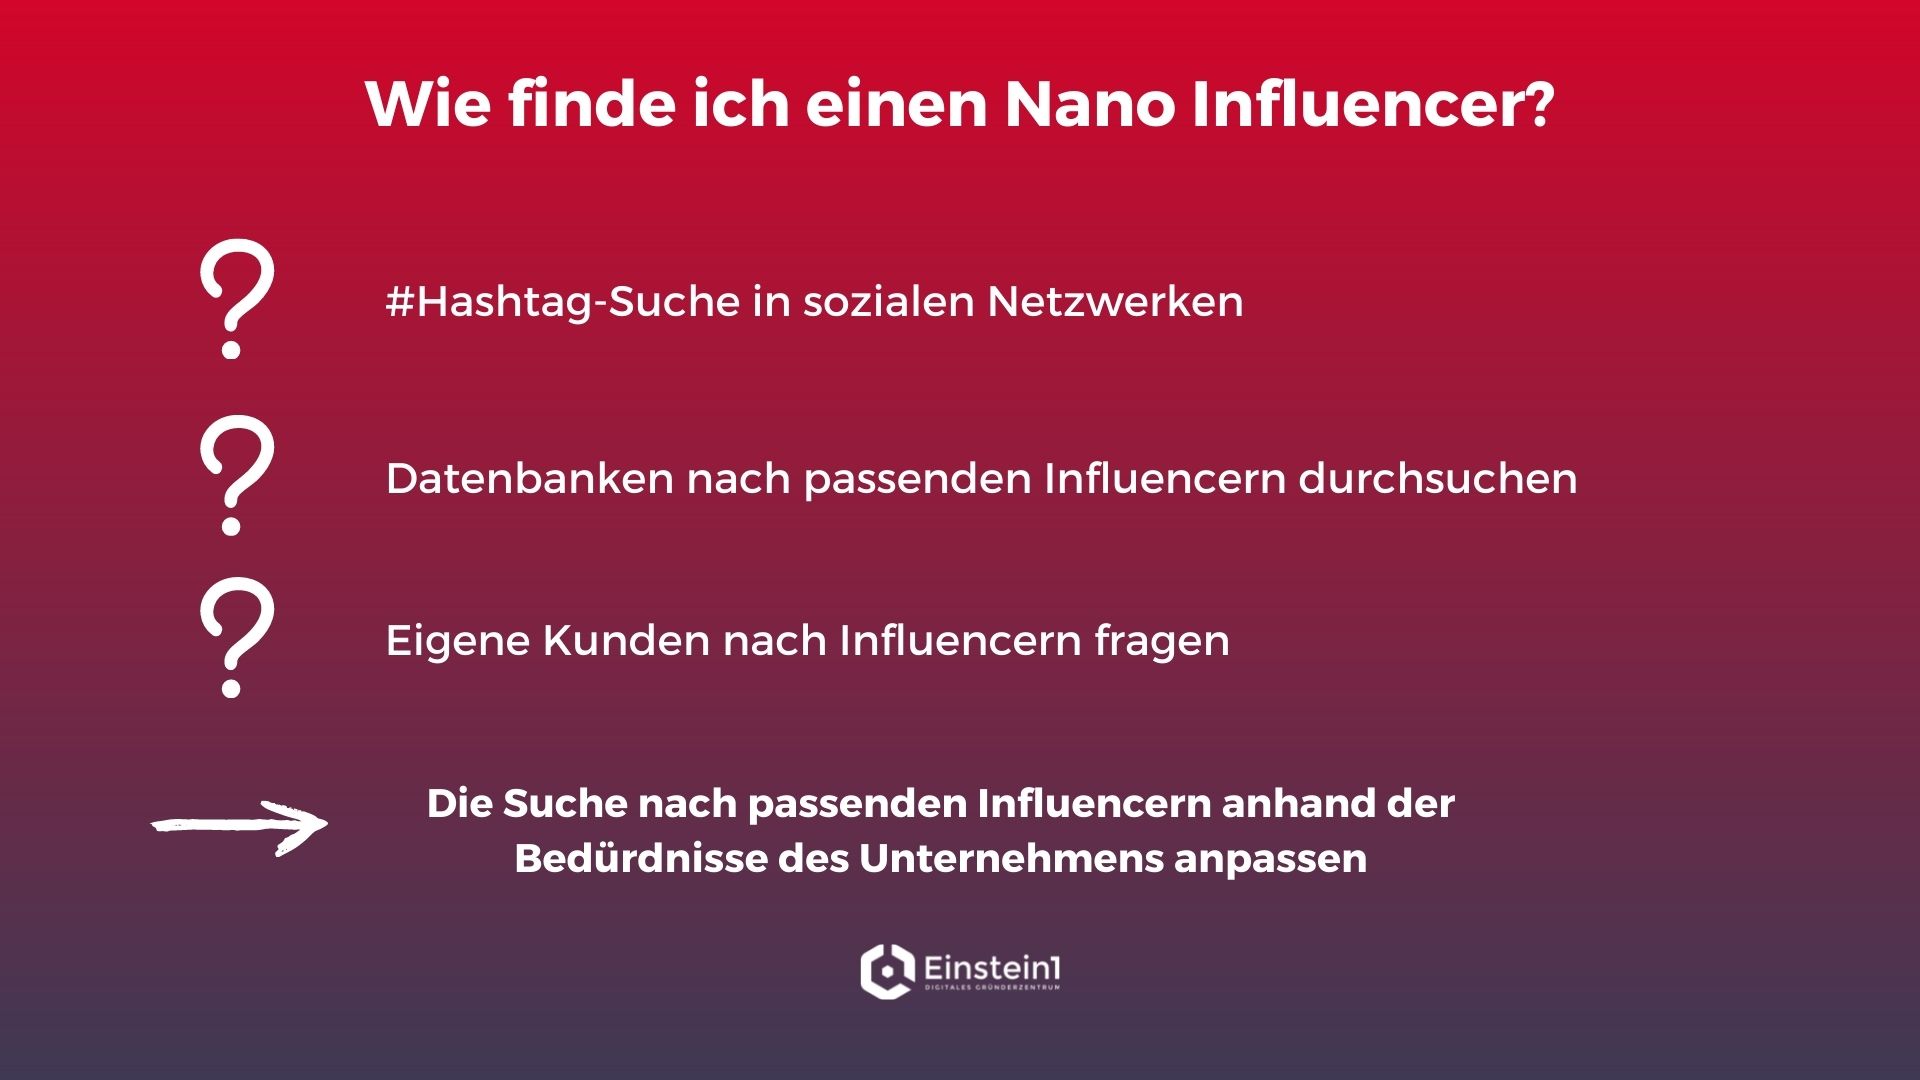 nano-influencer-kleine-influencer-mit-hoher-autorität-wie-finde-ich-nano-influencer-einstein1